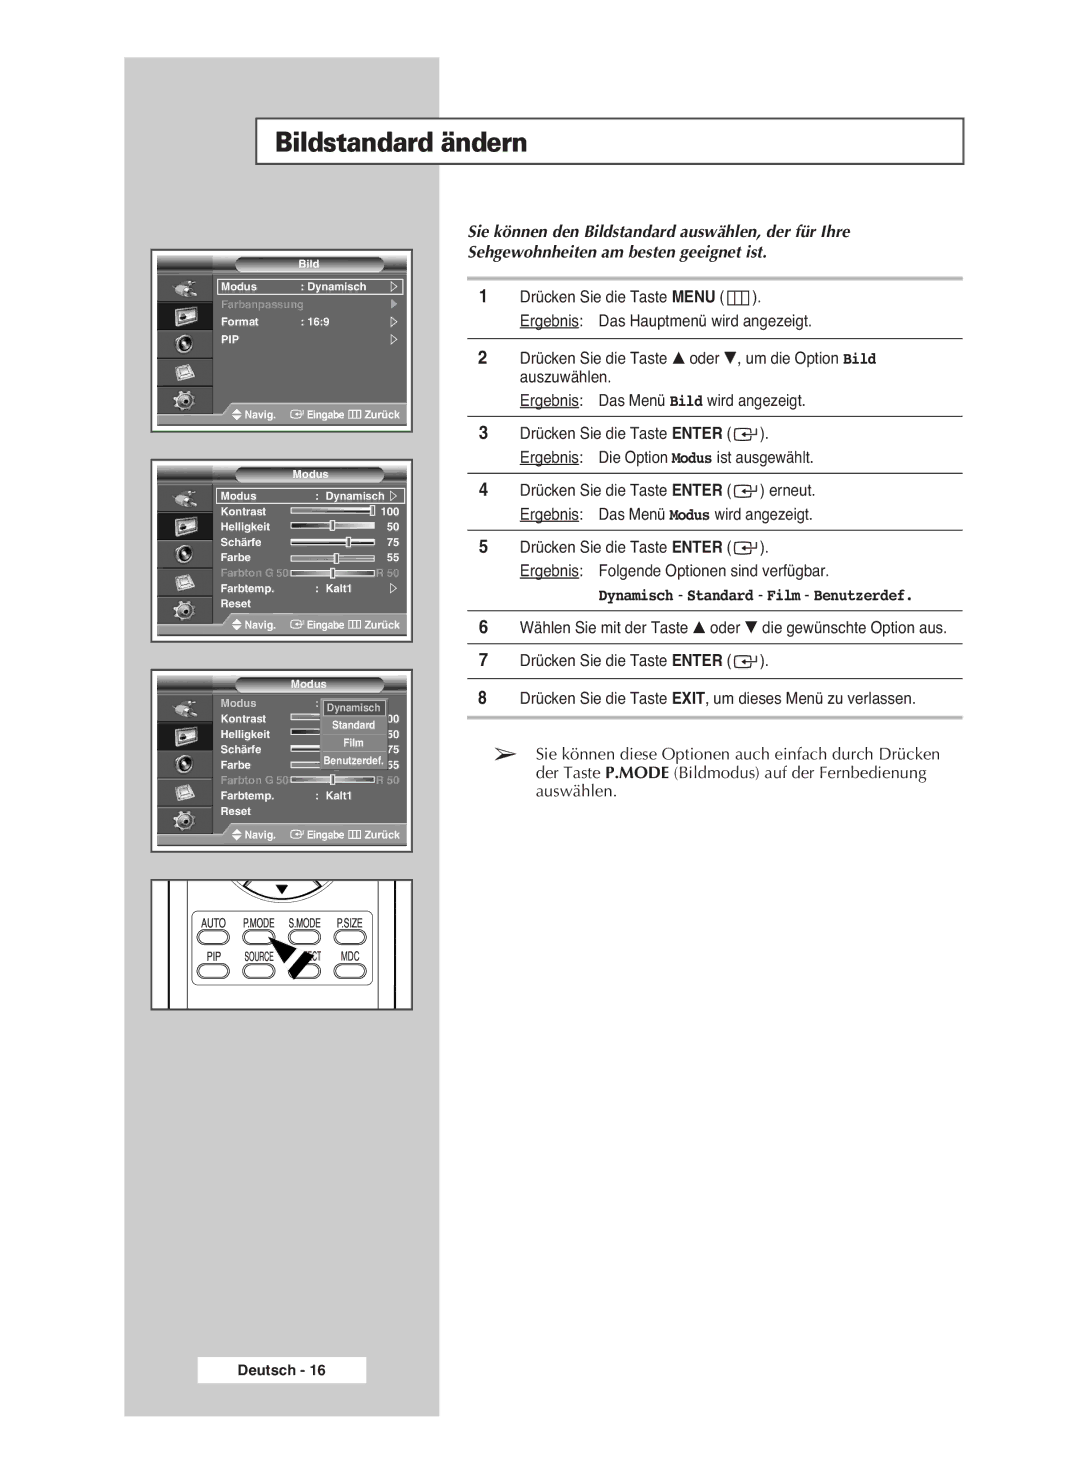 Samsung PPM42M6SSX/EDC manual Bildstandard ändern, Dynamisch Standard Film Benutzerdef 